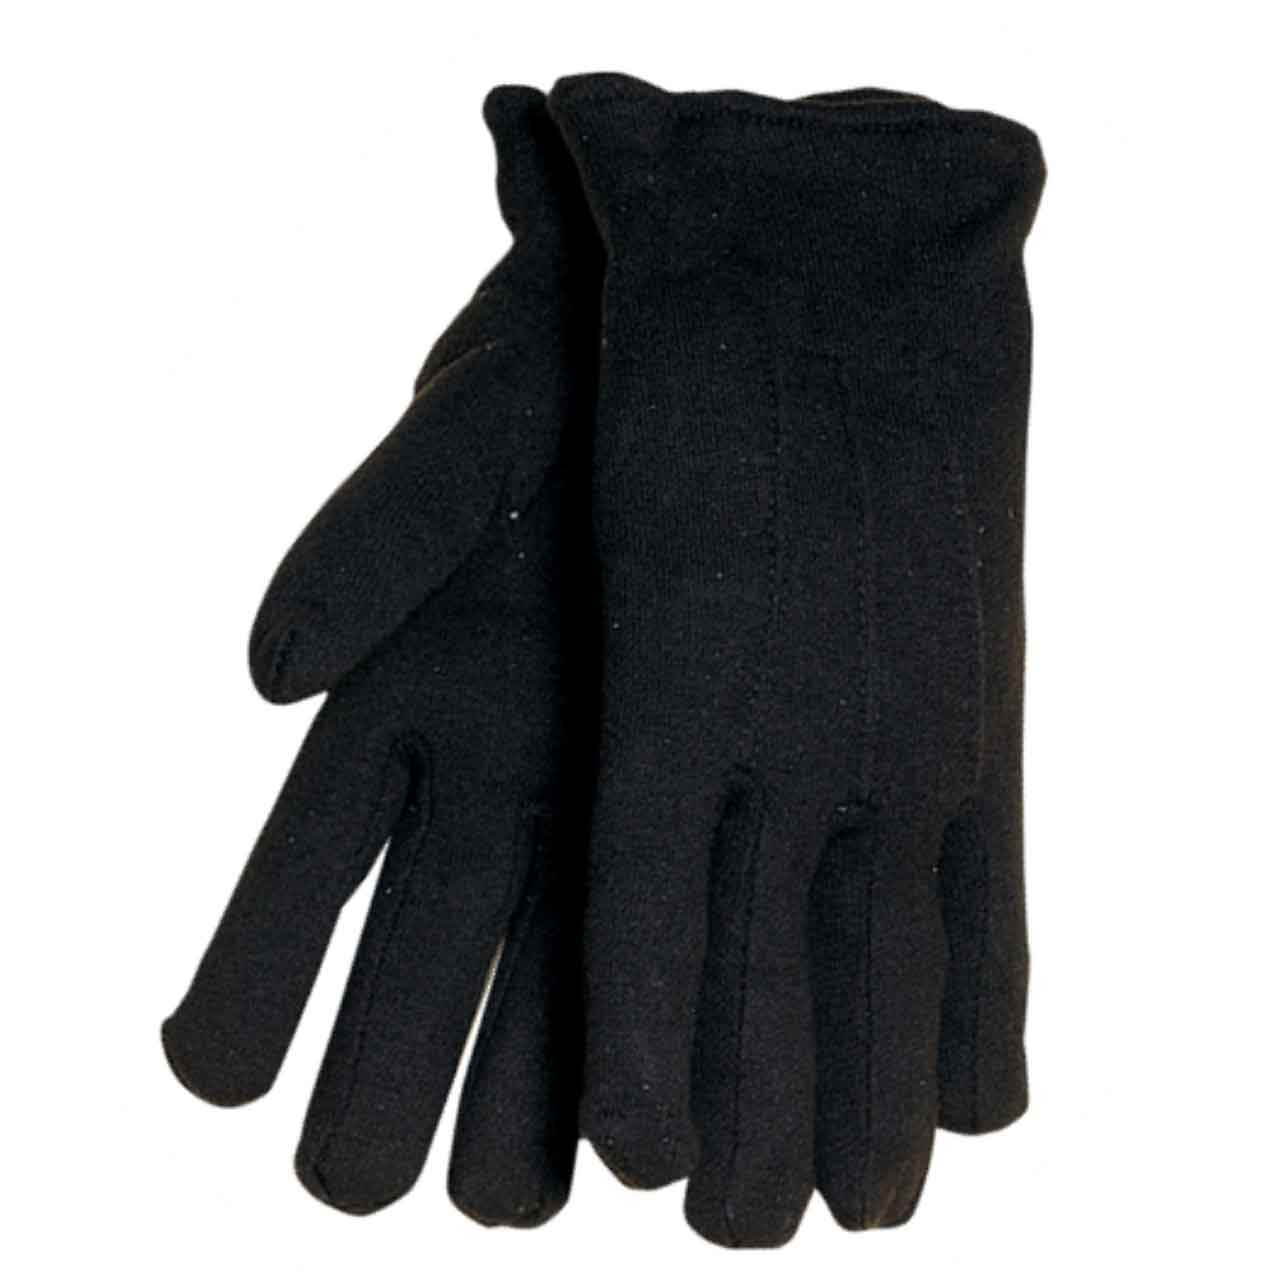 Cotton Work Gloves, Work Gloves Wholesale